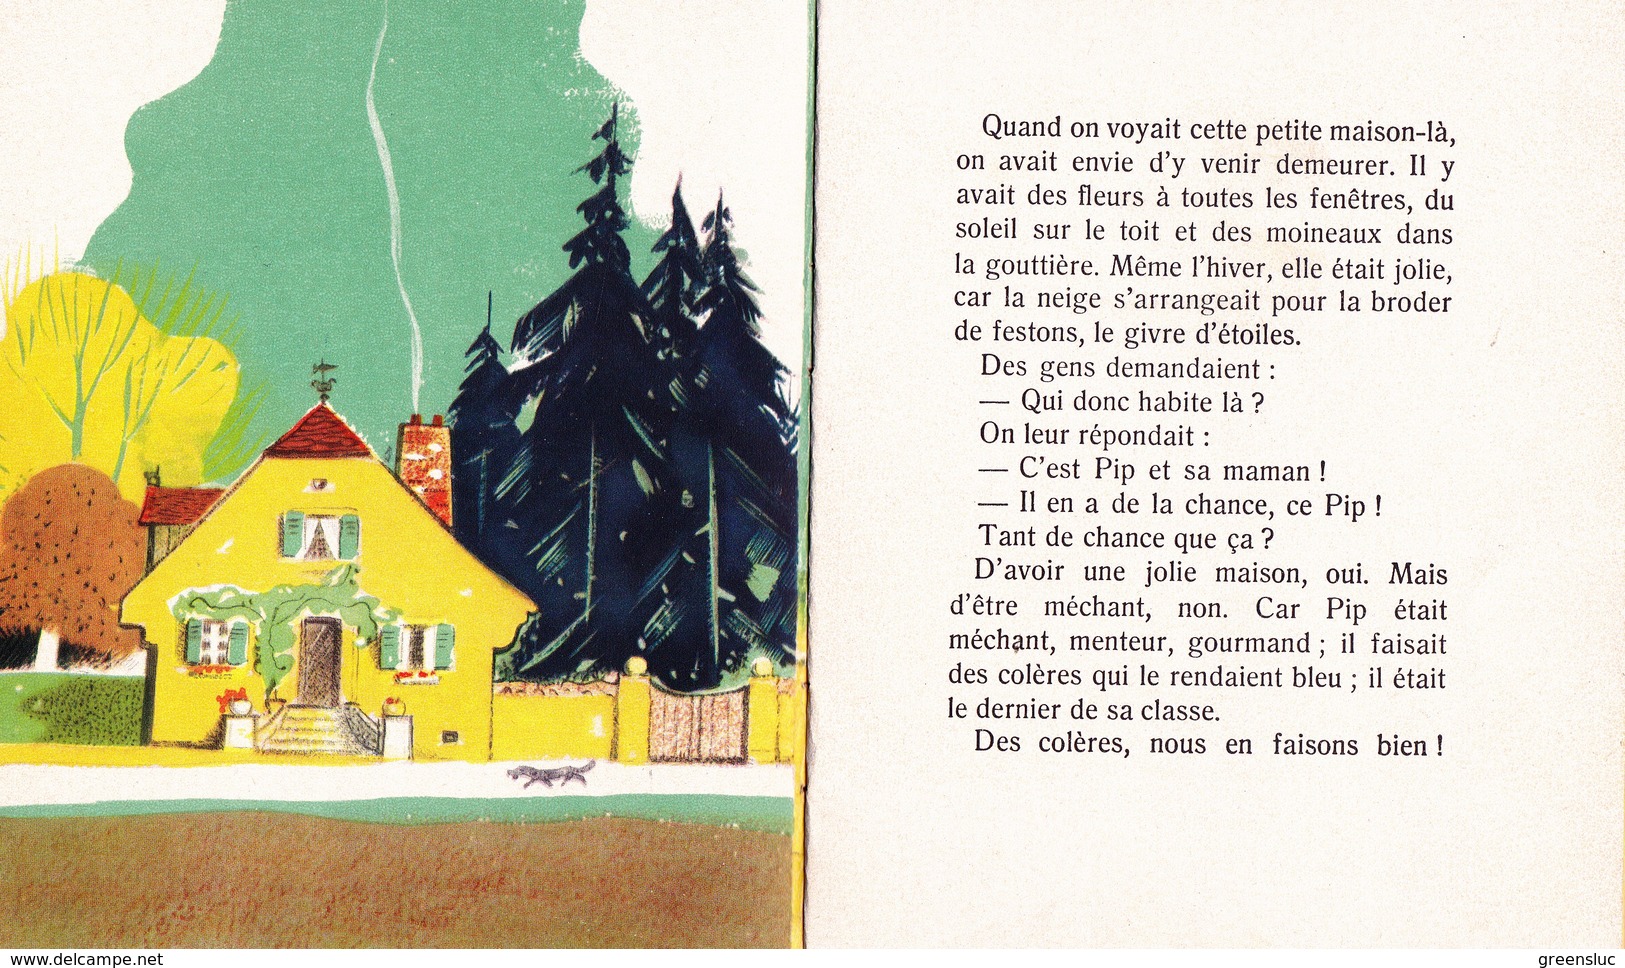 PIP ET SA MAISON - LES PETITS  PERE CASTOR 1951. Flammarion - Autres & Non Classés